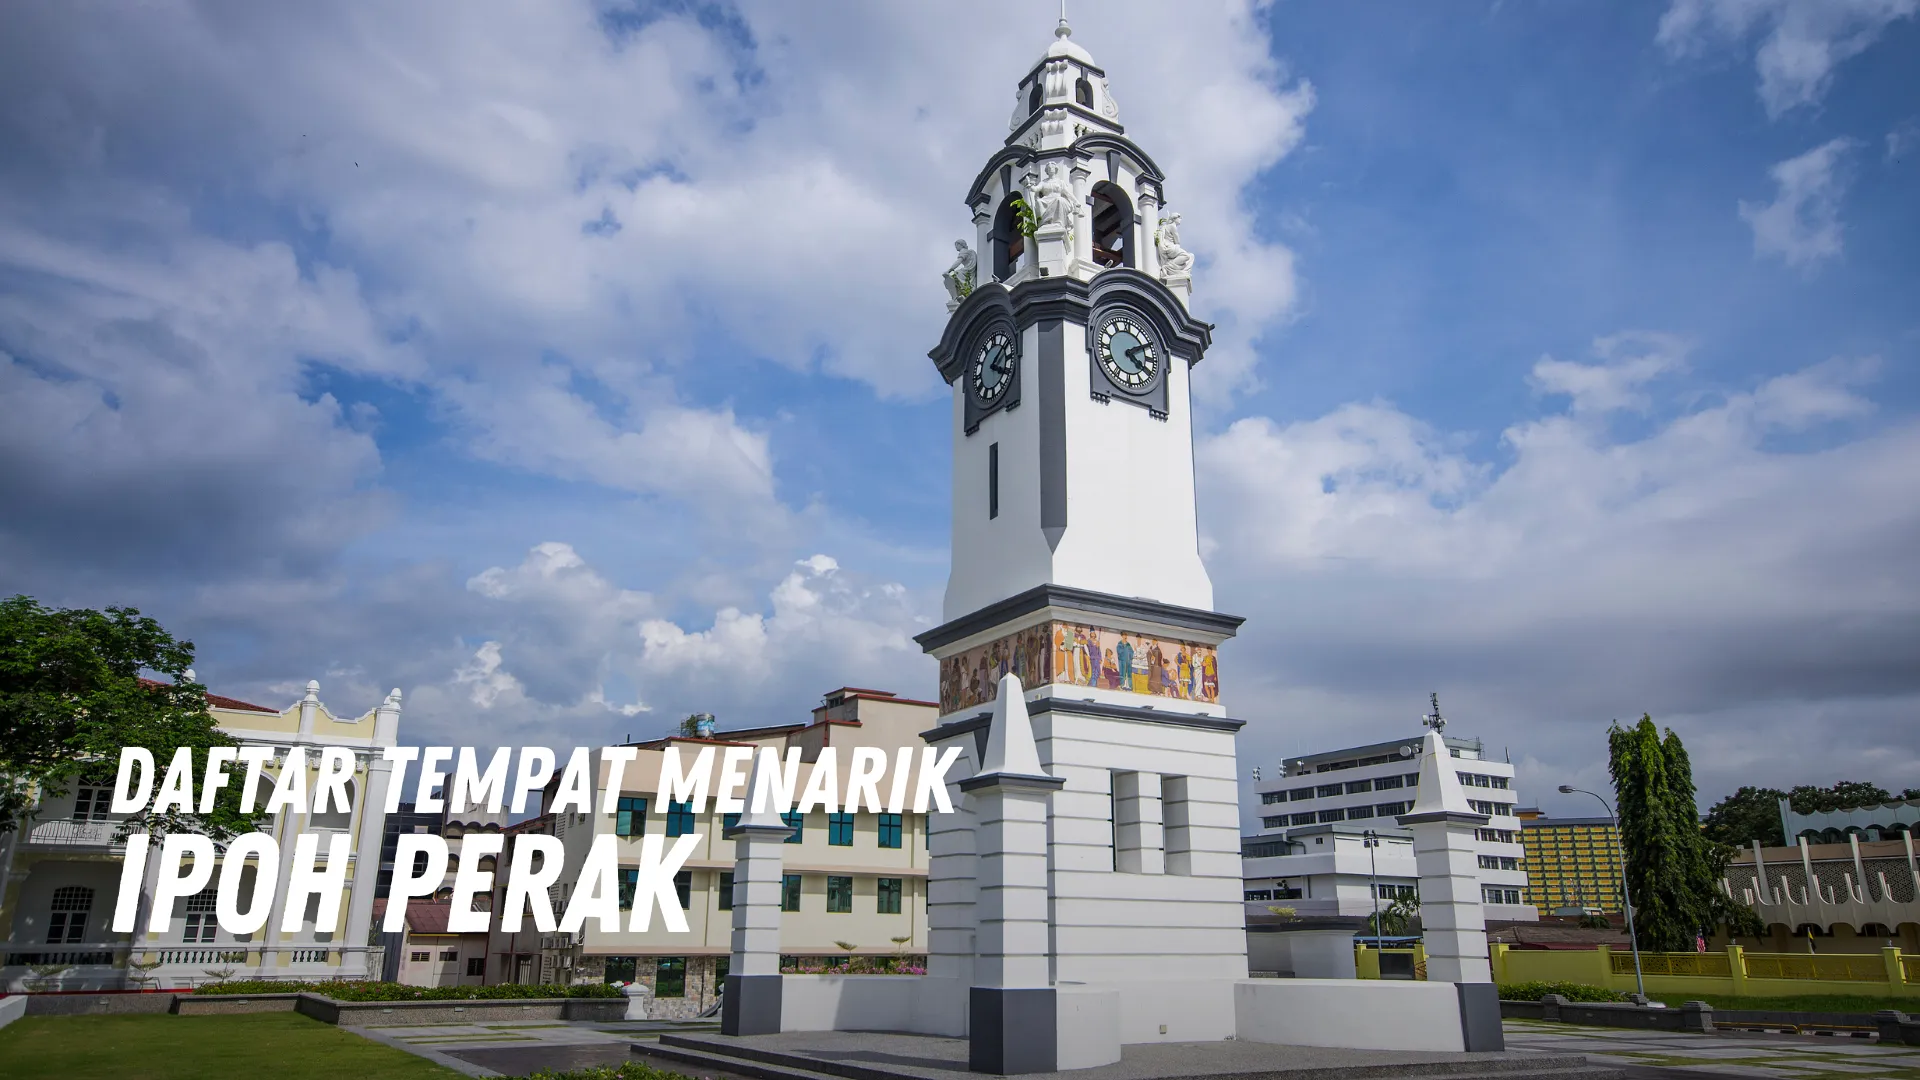 Review Tempat Menarik di Ipoh Malaysia